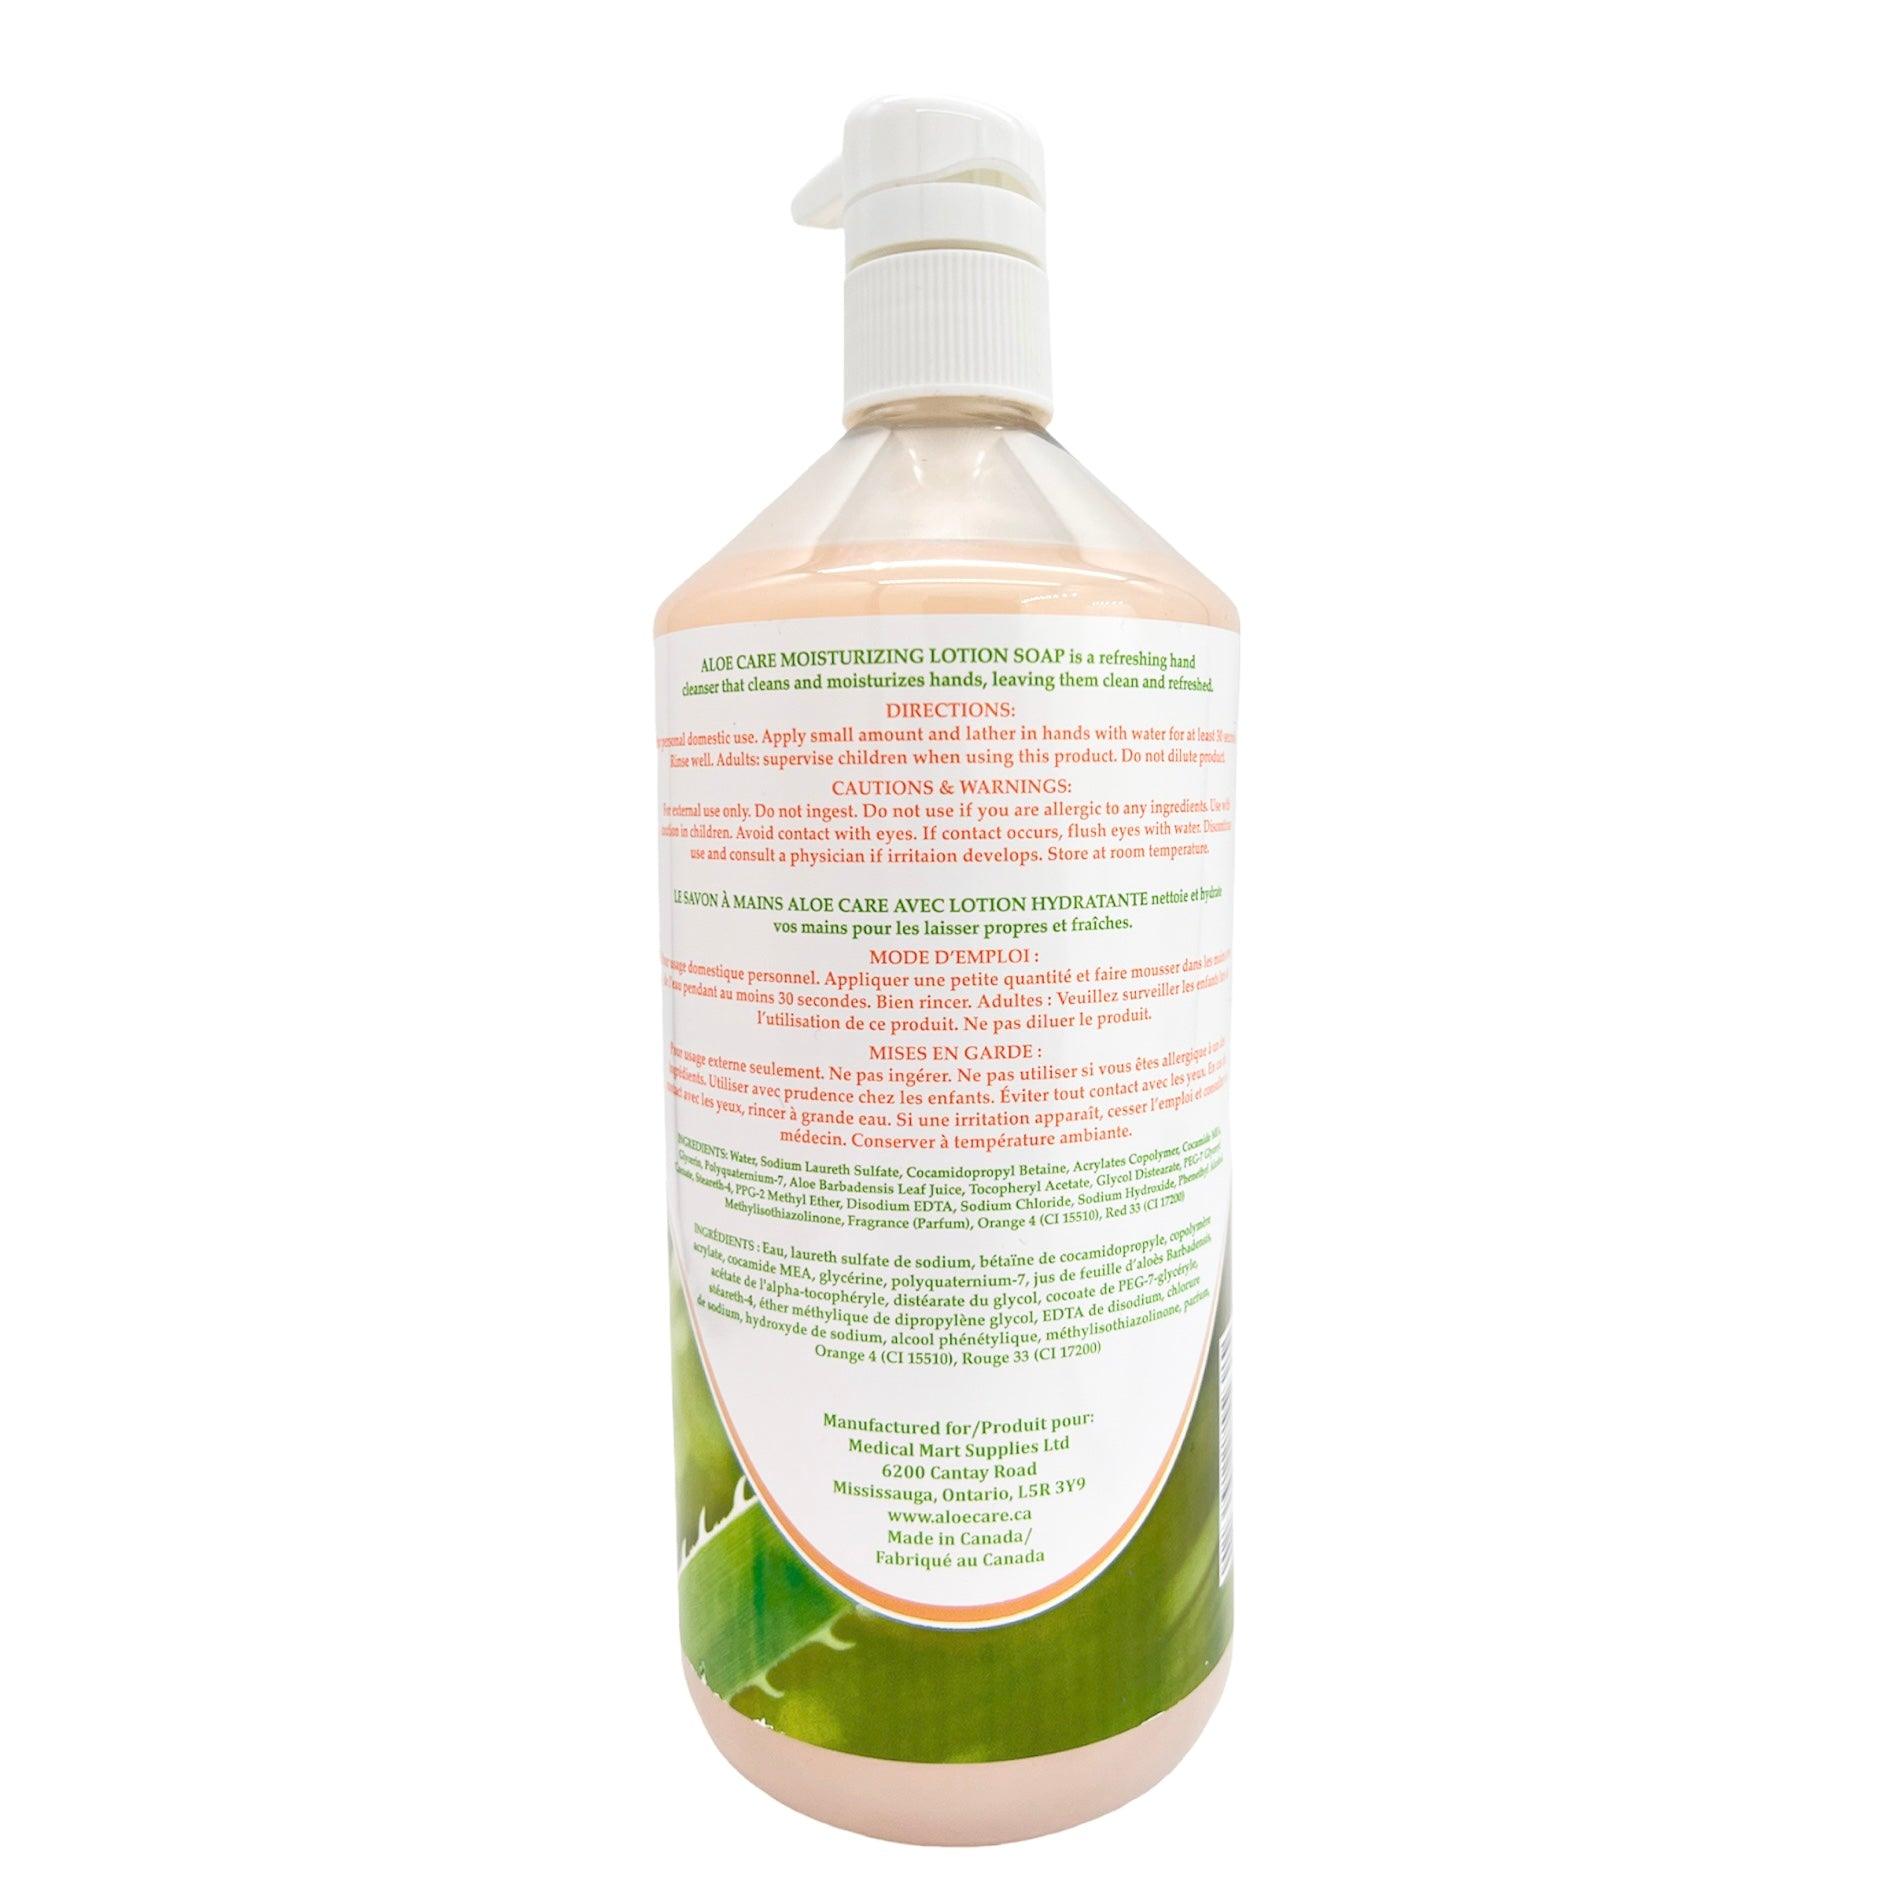 Aloe Care - Moisturizing Lotion Soap - 1000ml